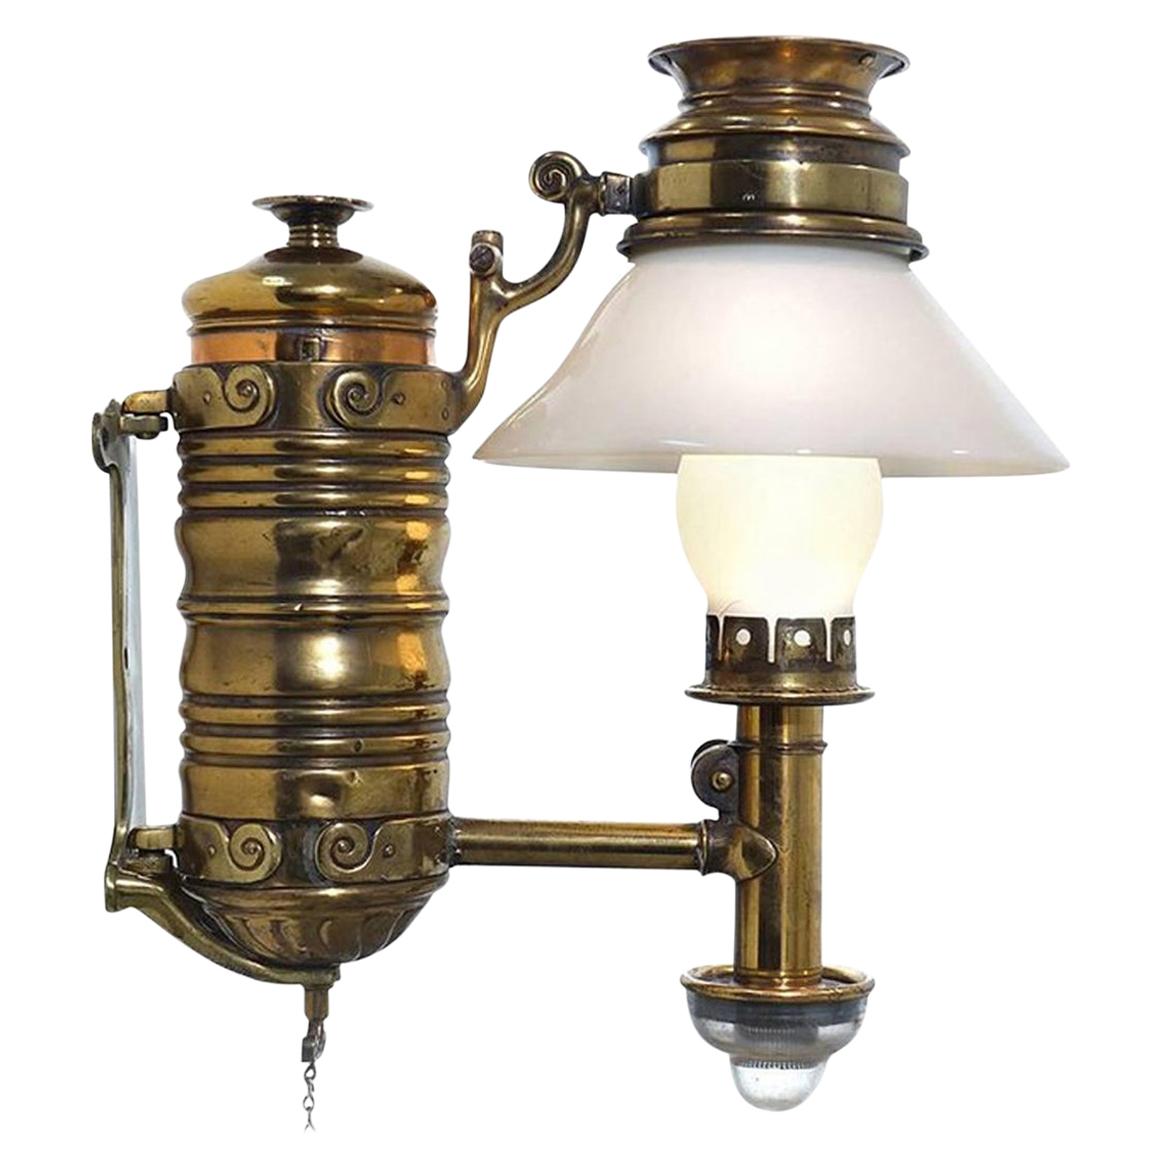 Very Rare 1800s Adams & Westlake Railroad Dining Car Oil Lamp